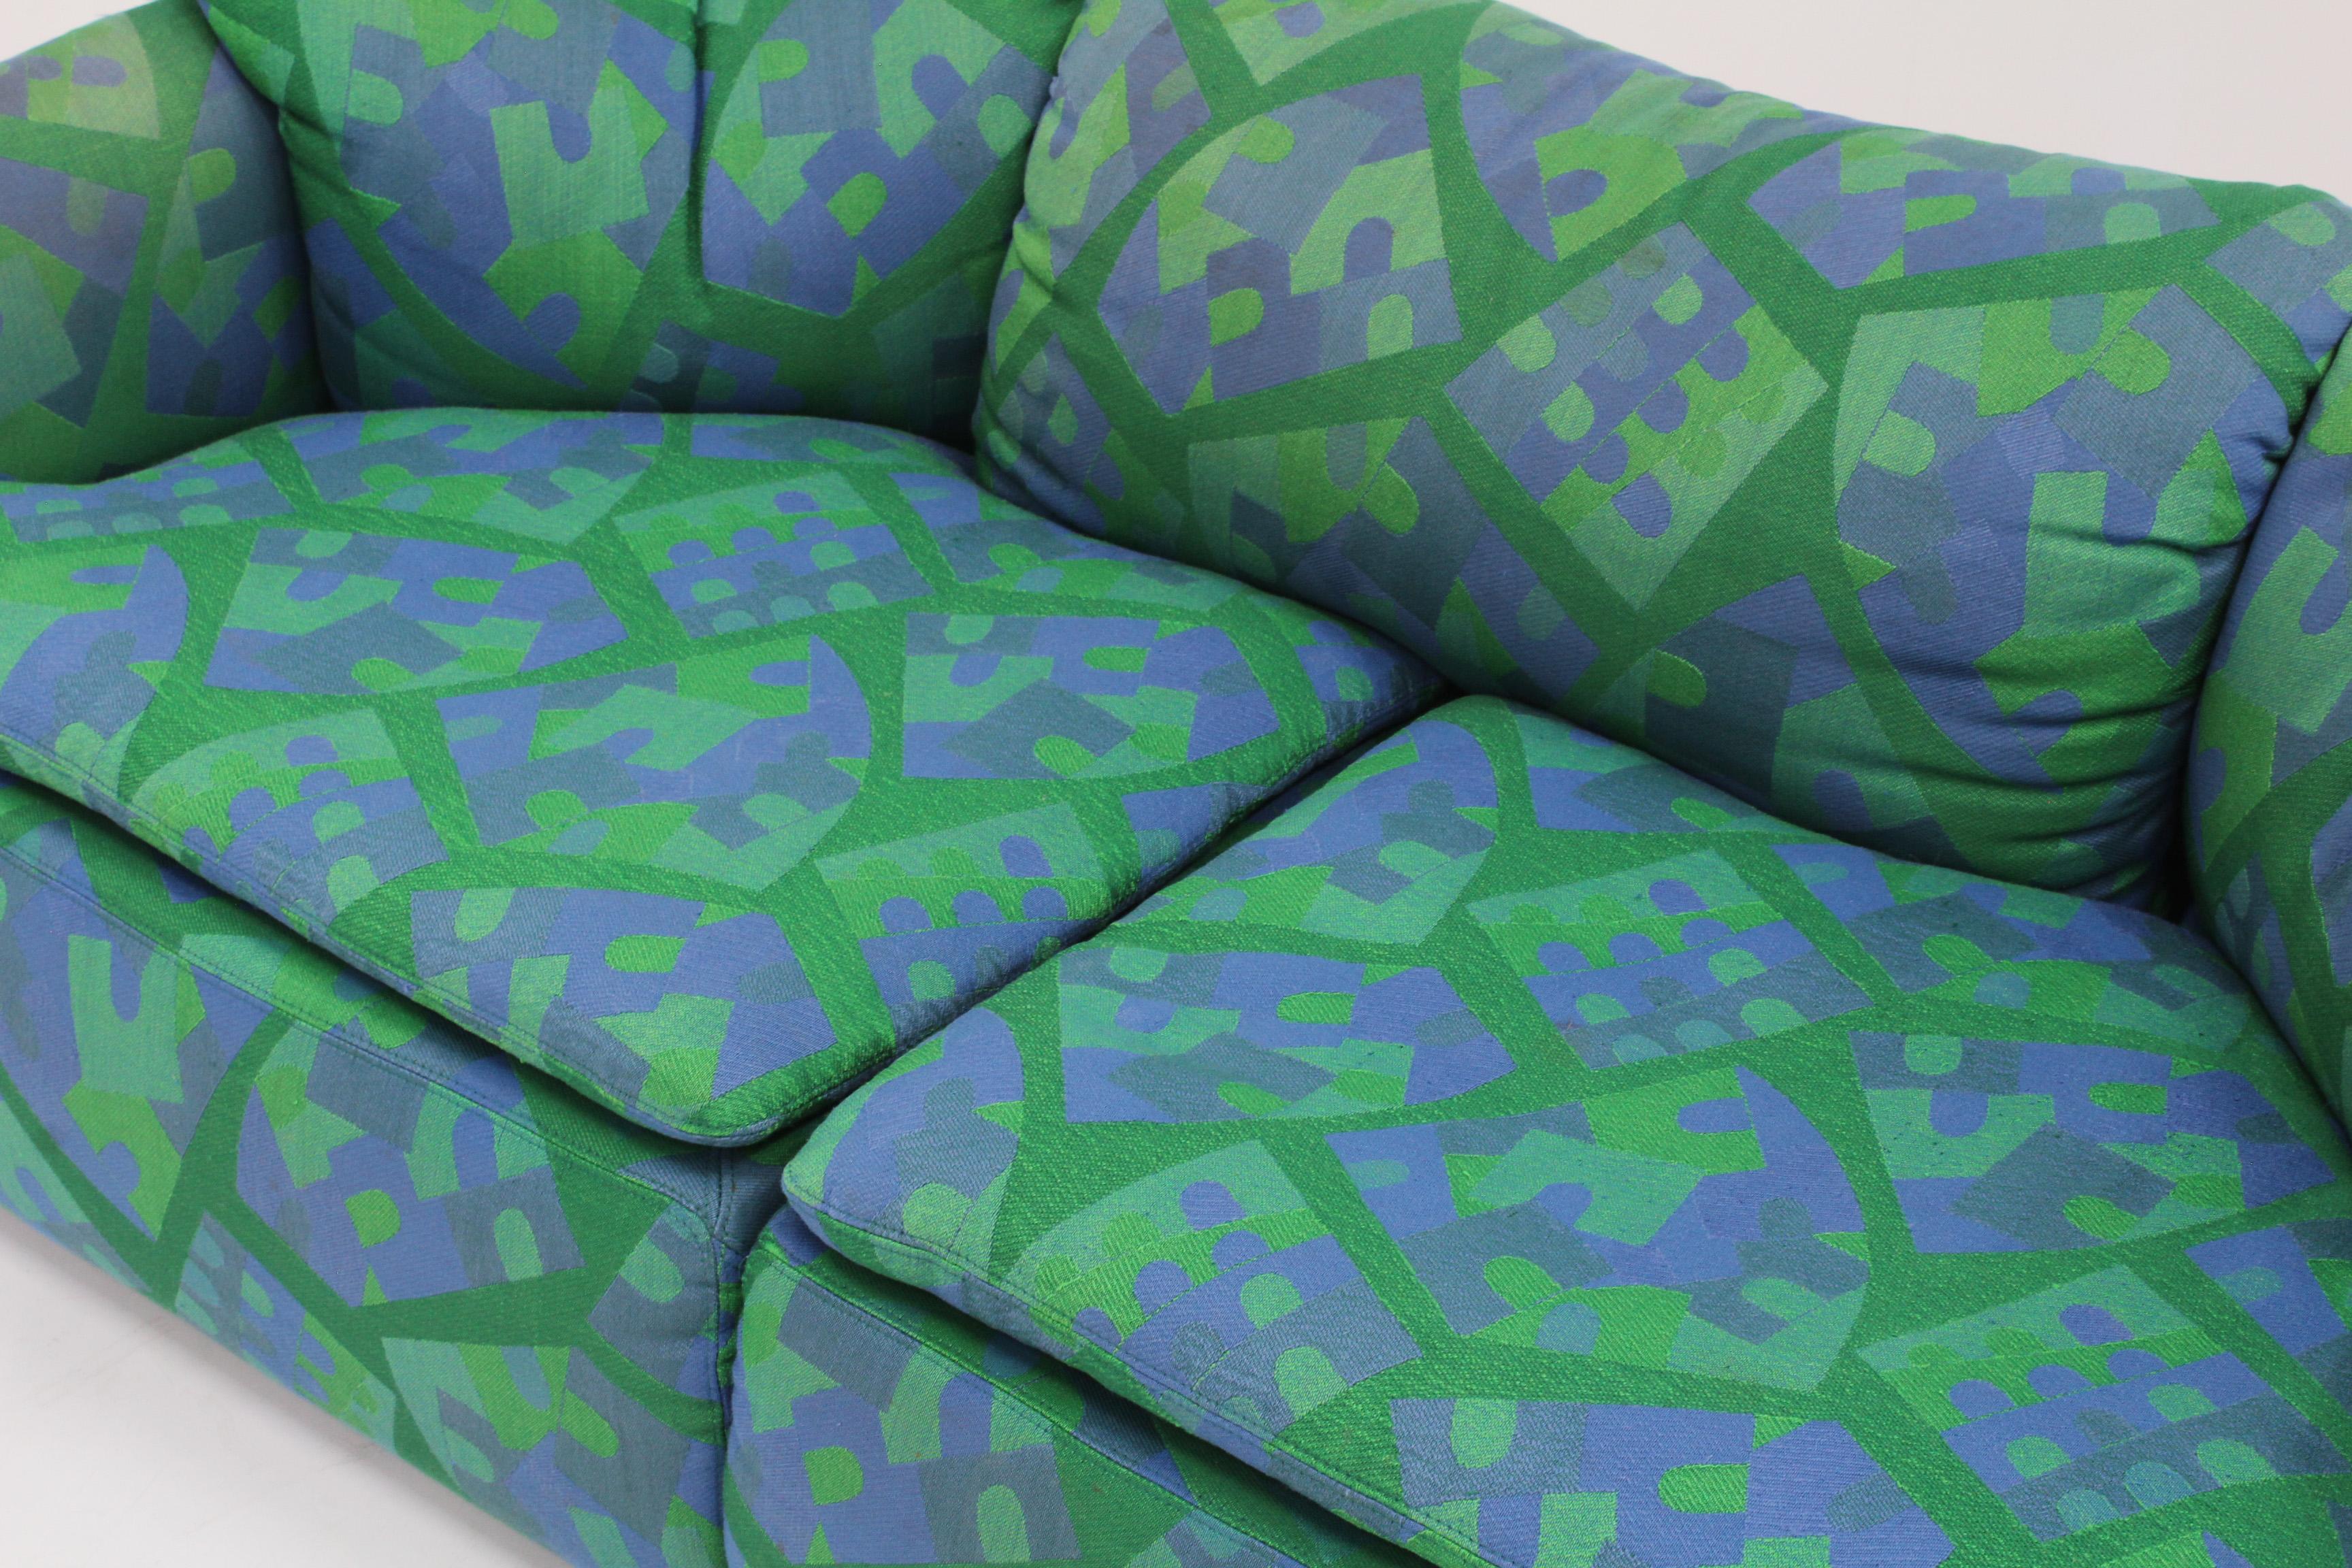 Confidential Sofa von Alberto Rosselli für Saporiti. Design/One aus den 1970er Jahren. Dieses italienische Sofa hat ein grafisches Design mit einem farbenfrohen blauen und grünen Stoff.

Guter Zustand mit altersentsprechenden